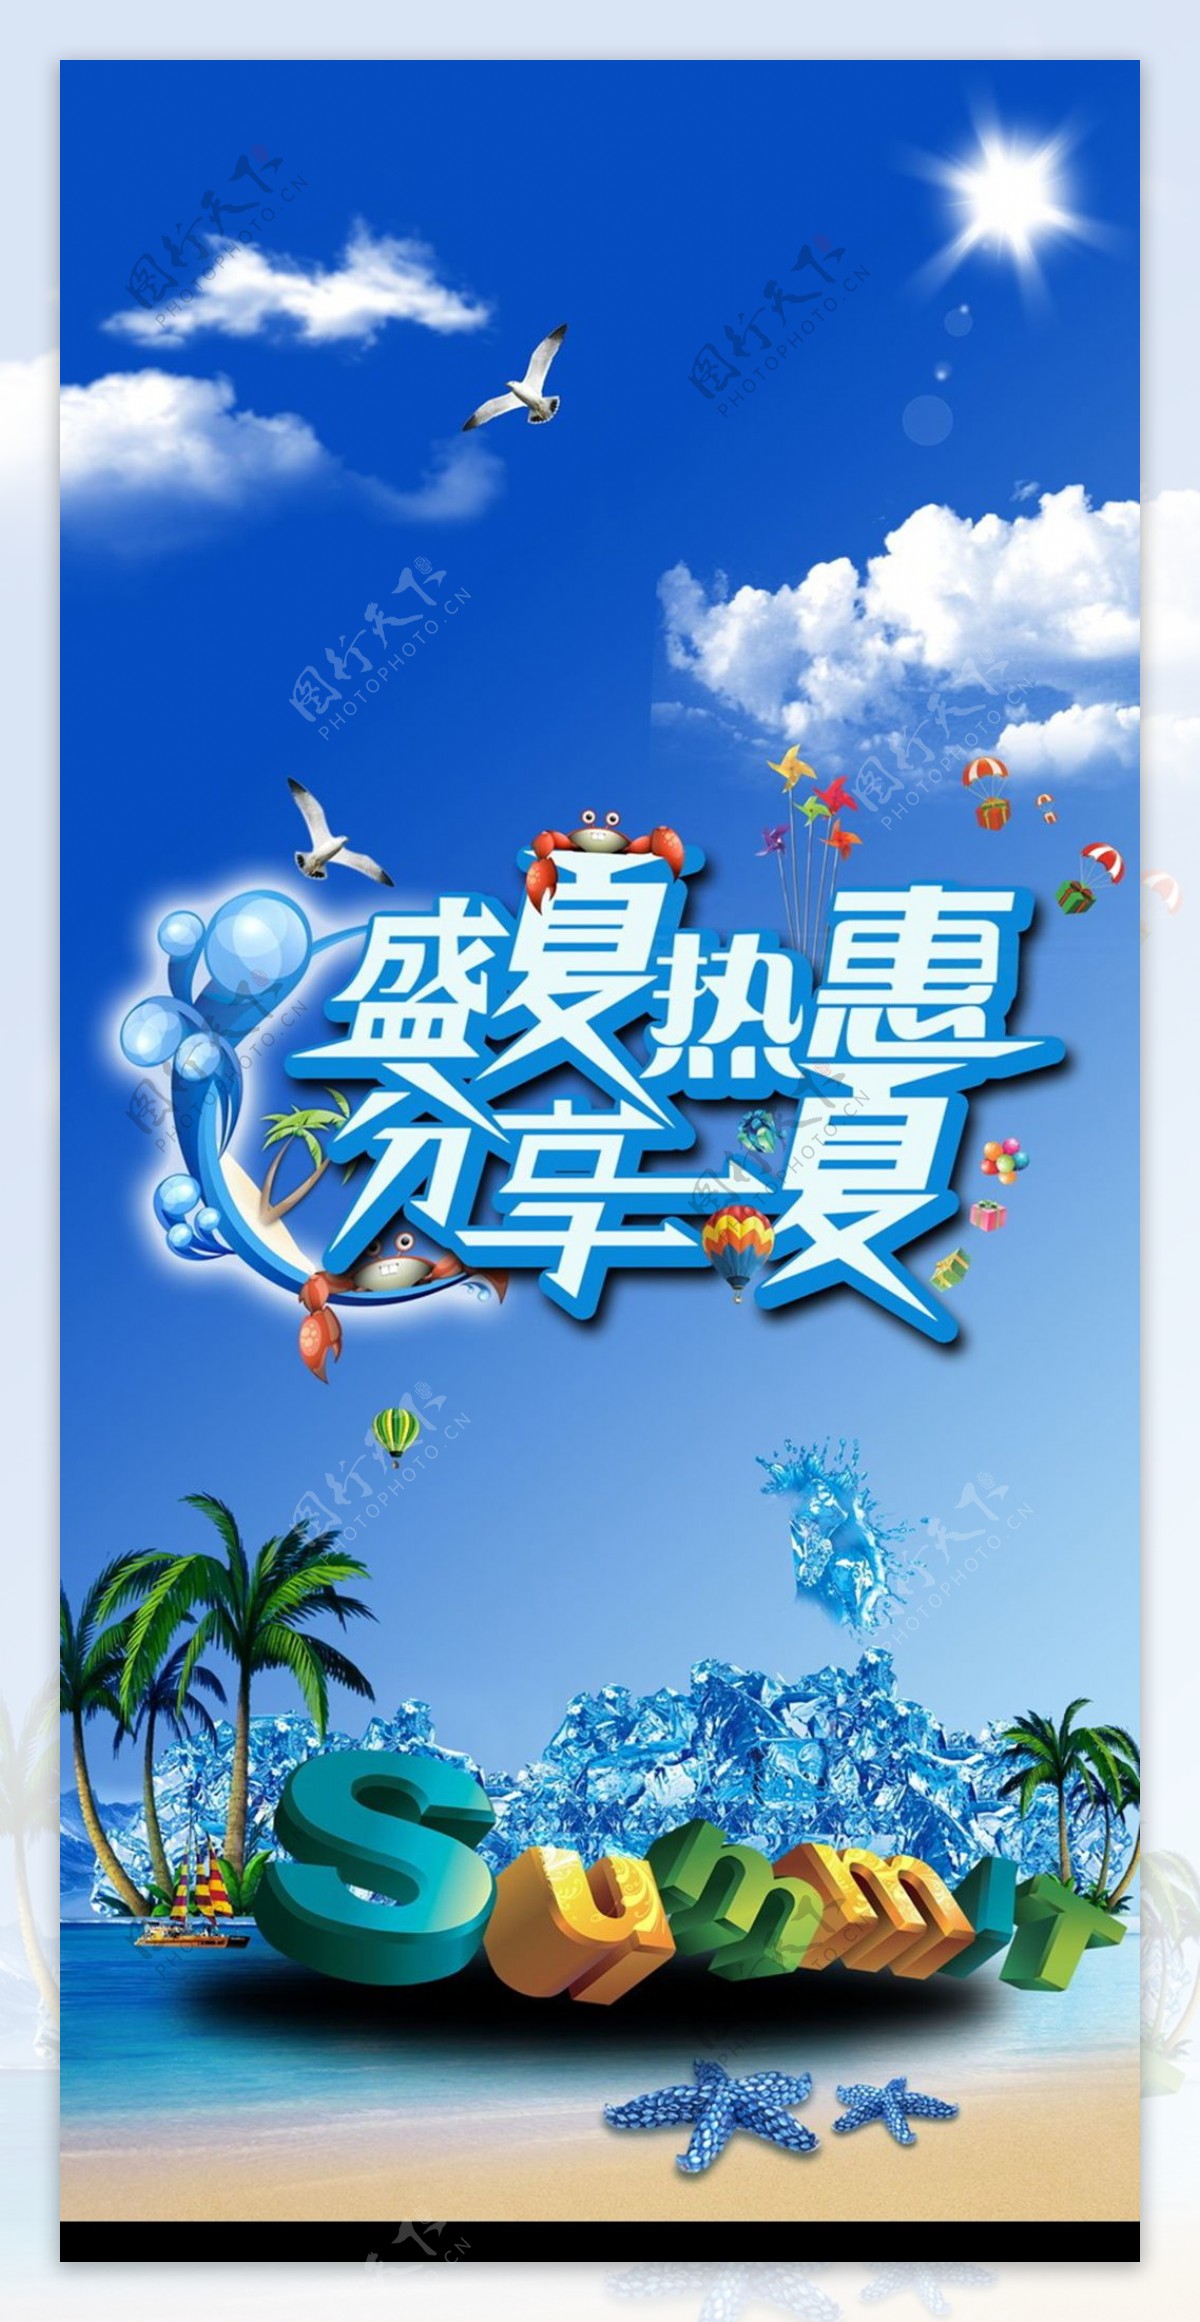 盛夏热惠宣传海报